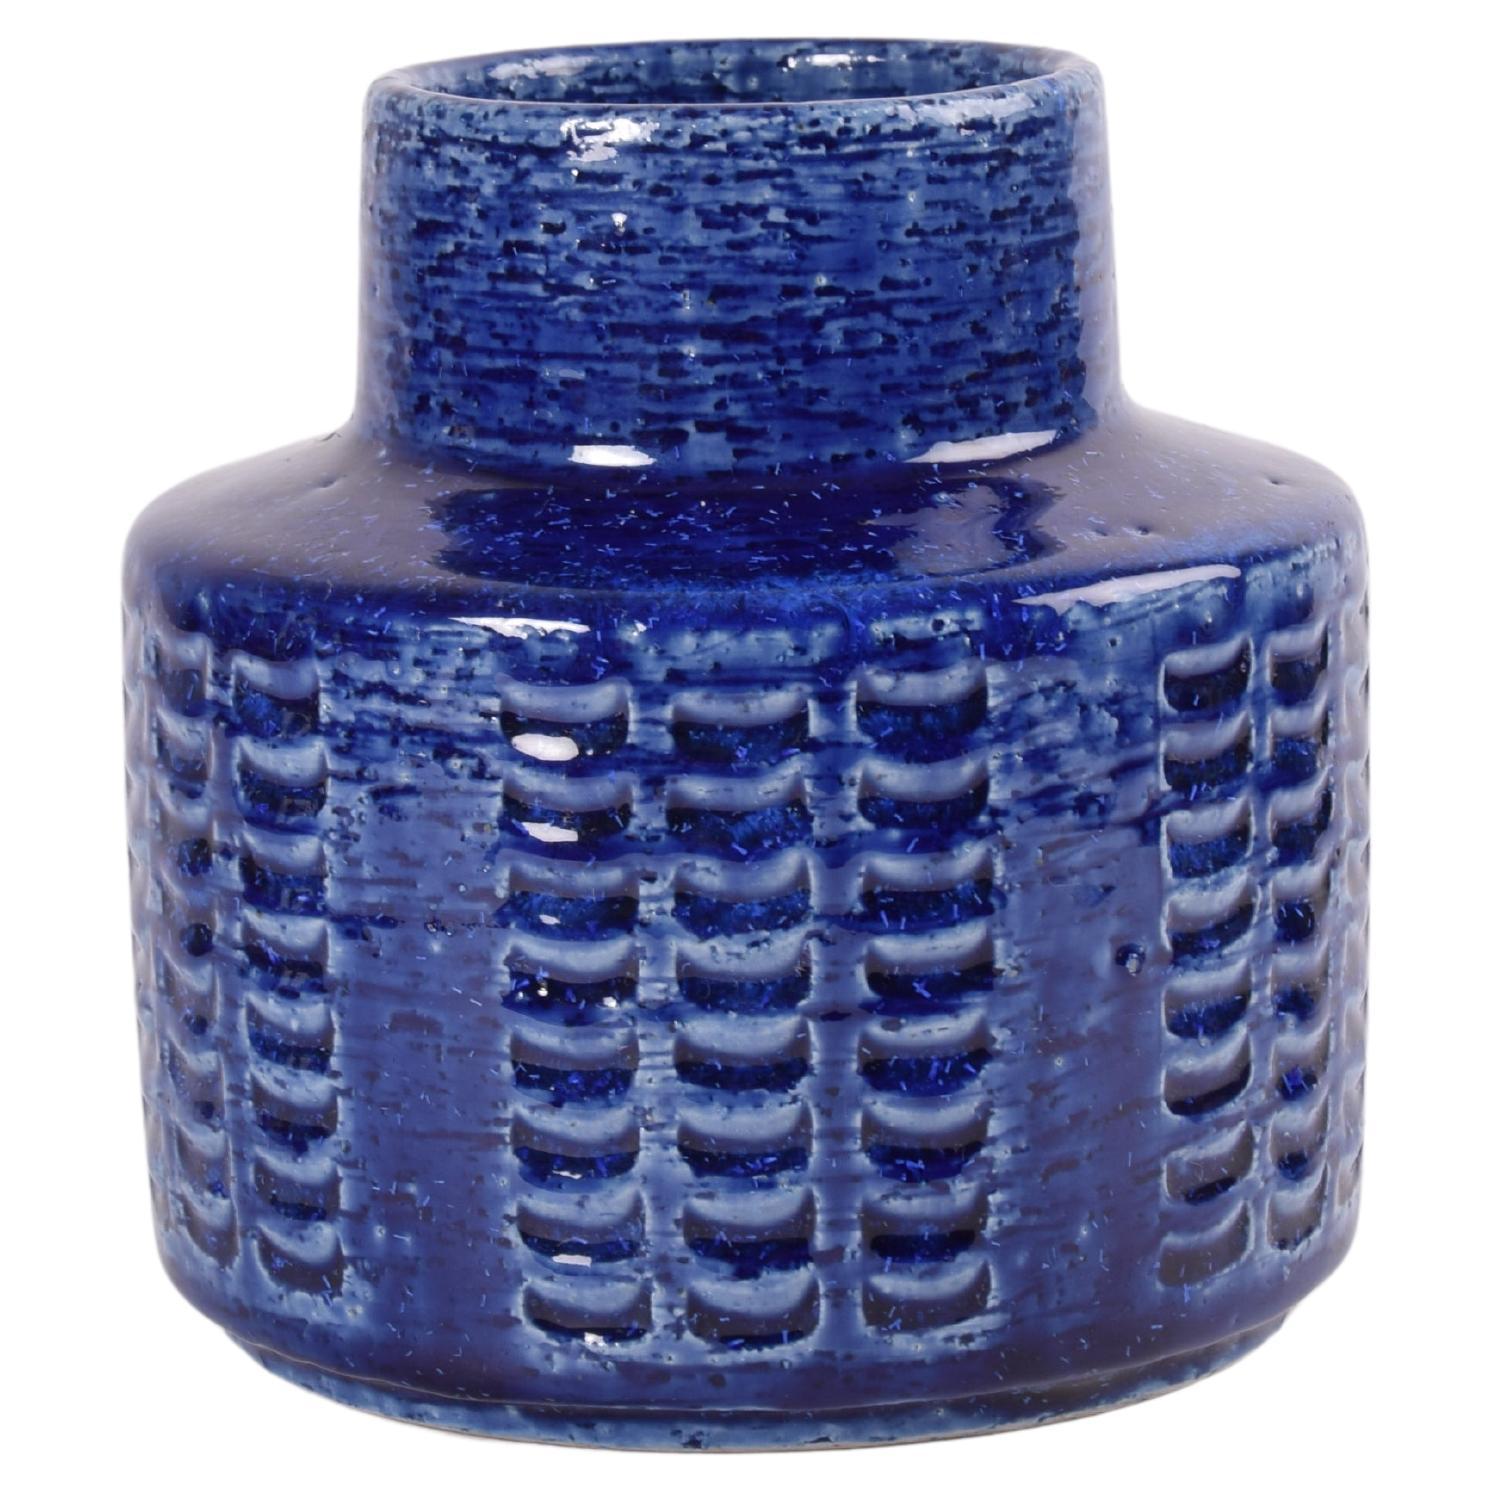 Vase en céramique de Per Linnemann-Schmidt pour Palshus Danemark. Fabriqué dans les années 1960.
Il est fabriqué avec de l'argile chamottée qui donne une surface rugueuse et vive. Il présente une glaçure bleu cobalt brillante sur un décor